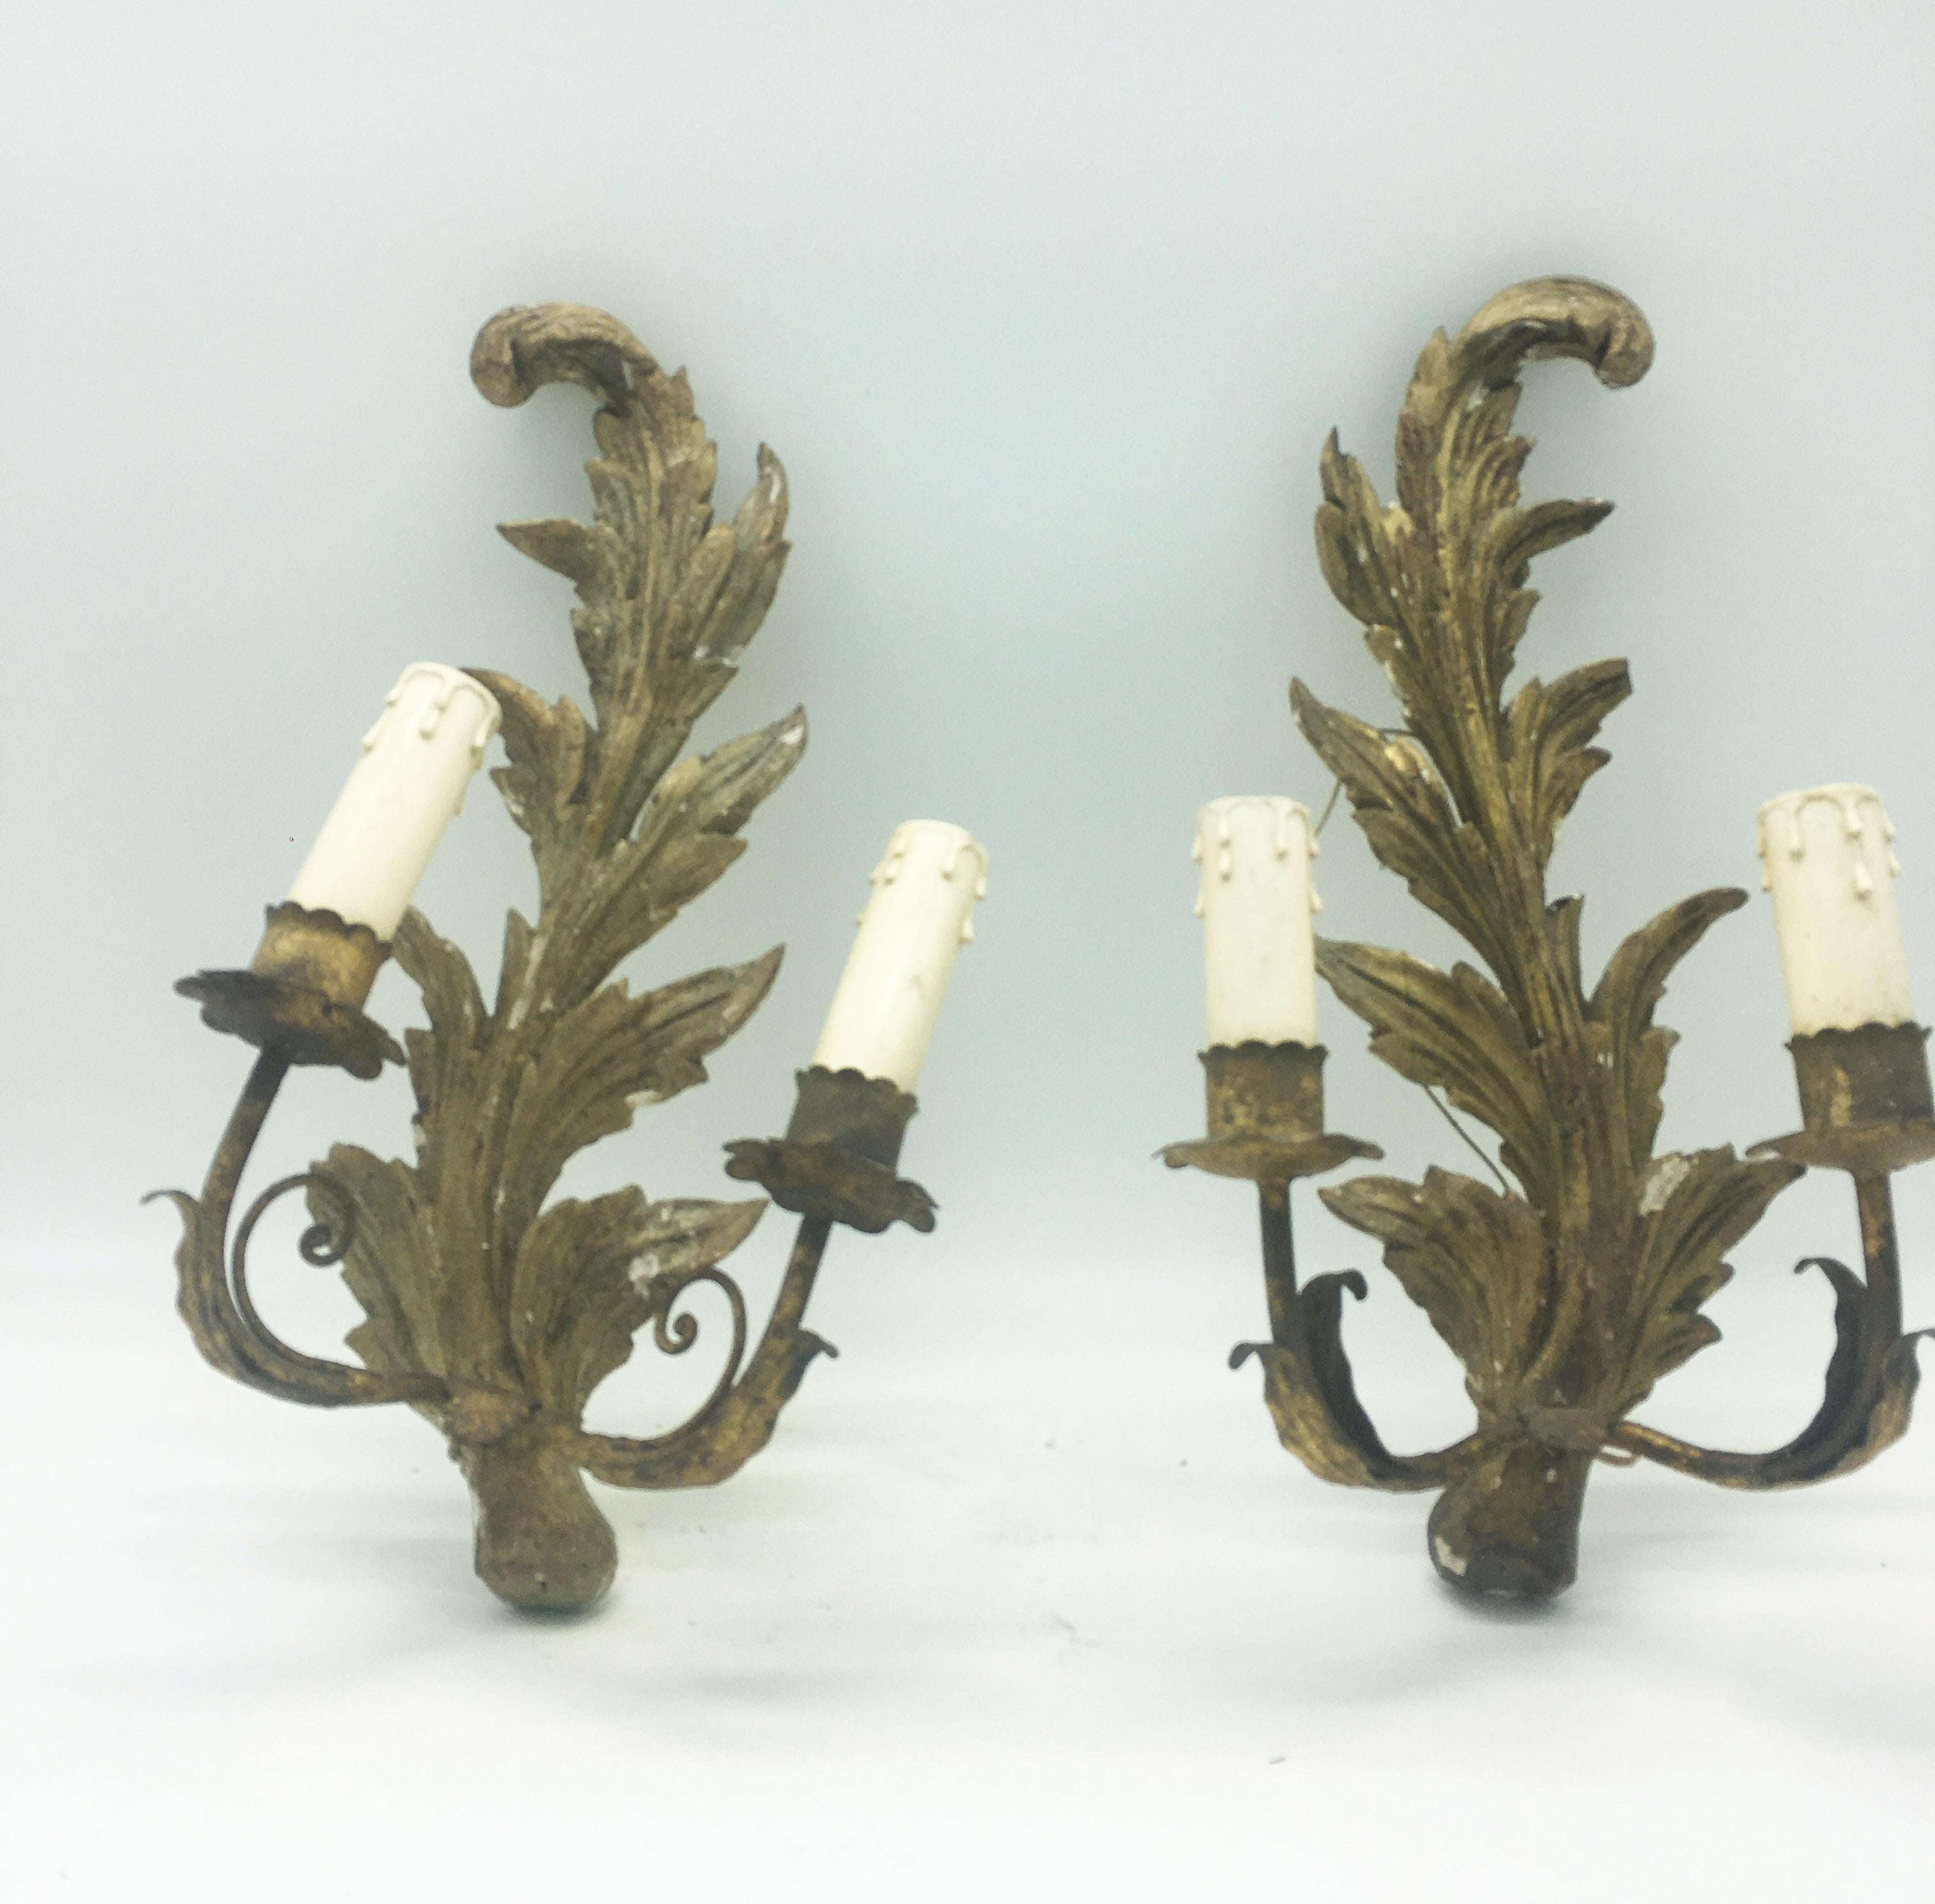 Seltenes antikes Paar von 2-Licht-Wandleuchten aus Metall und geschnitztem vergoldetem Holz.
Neapolitanische Manufaktur des 18. Jahrhunderts.
Geeignet für Kandelaber mit elektrischer Lampe.